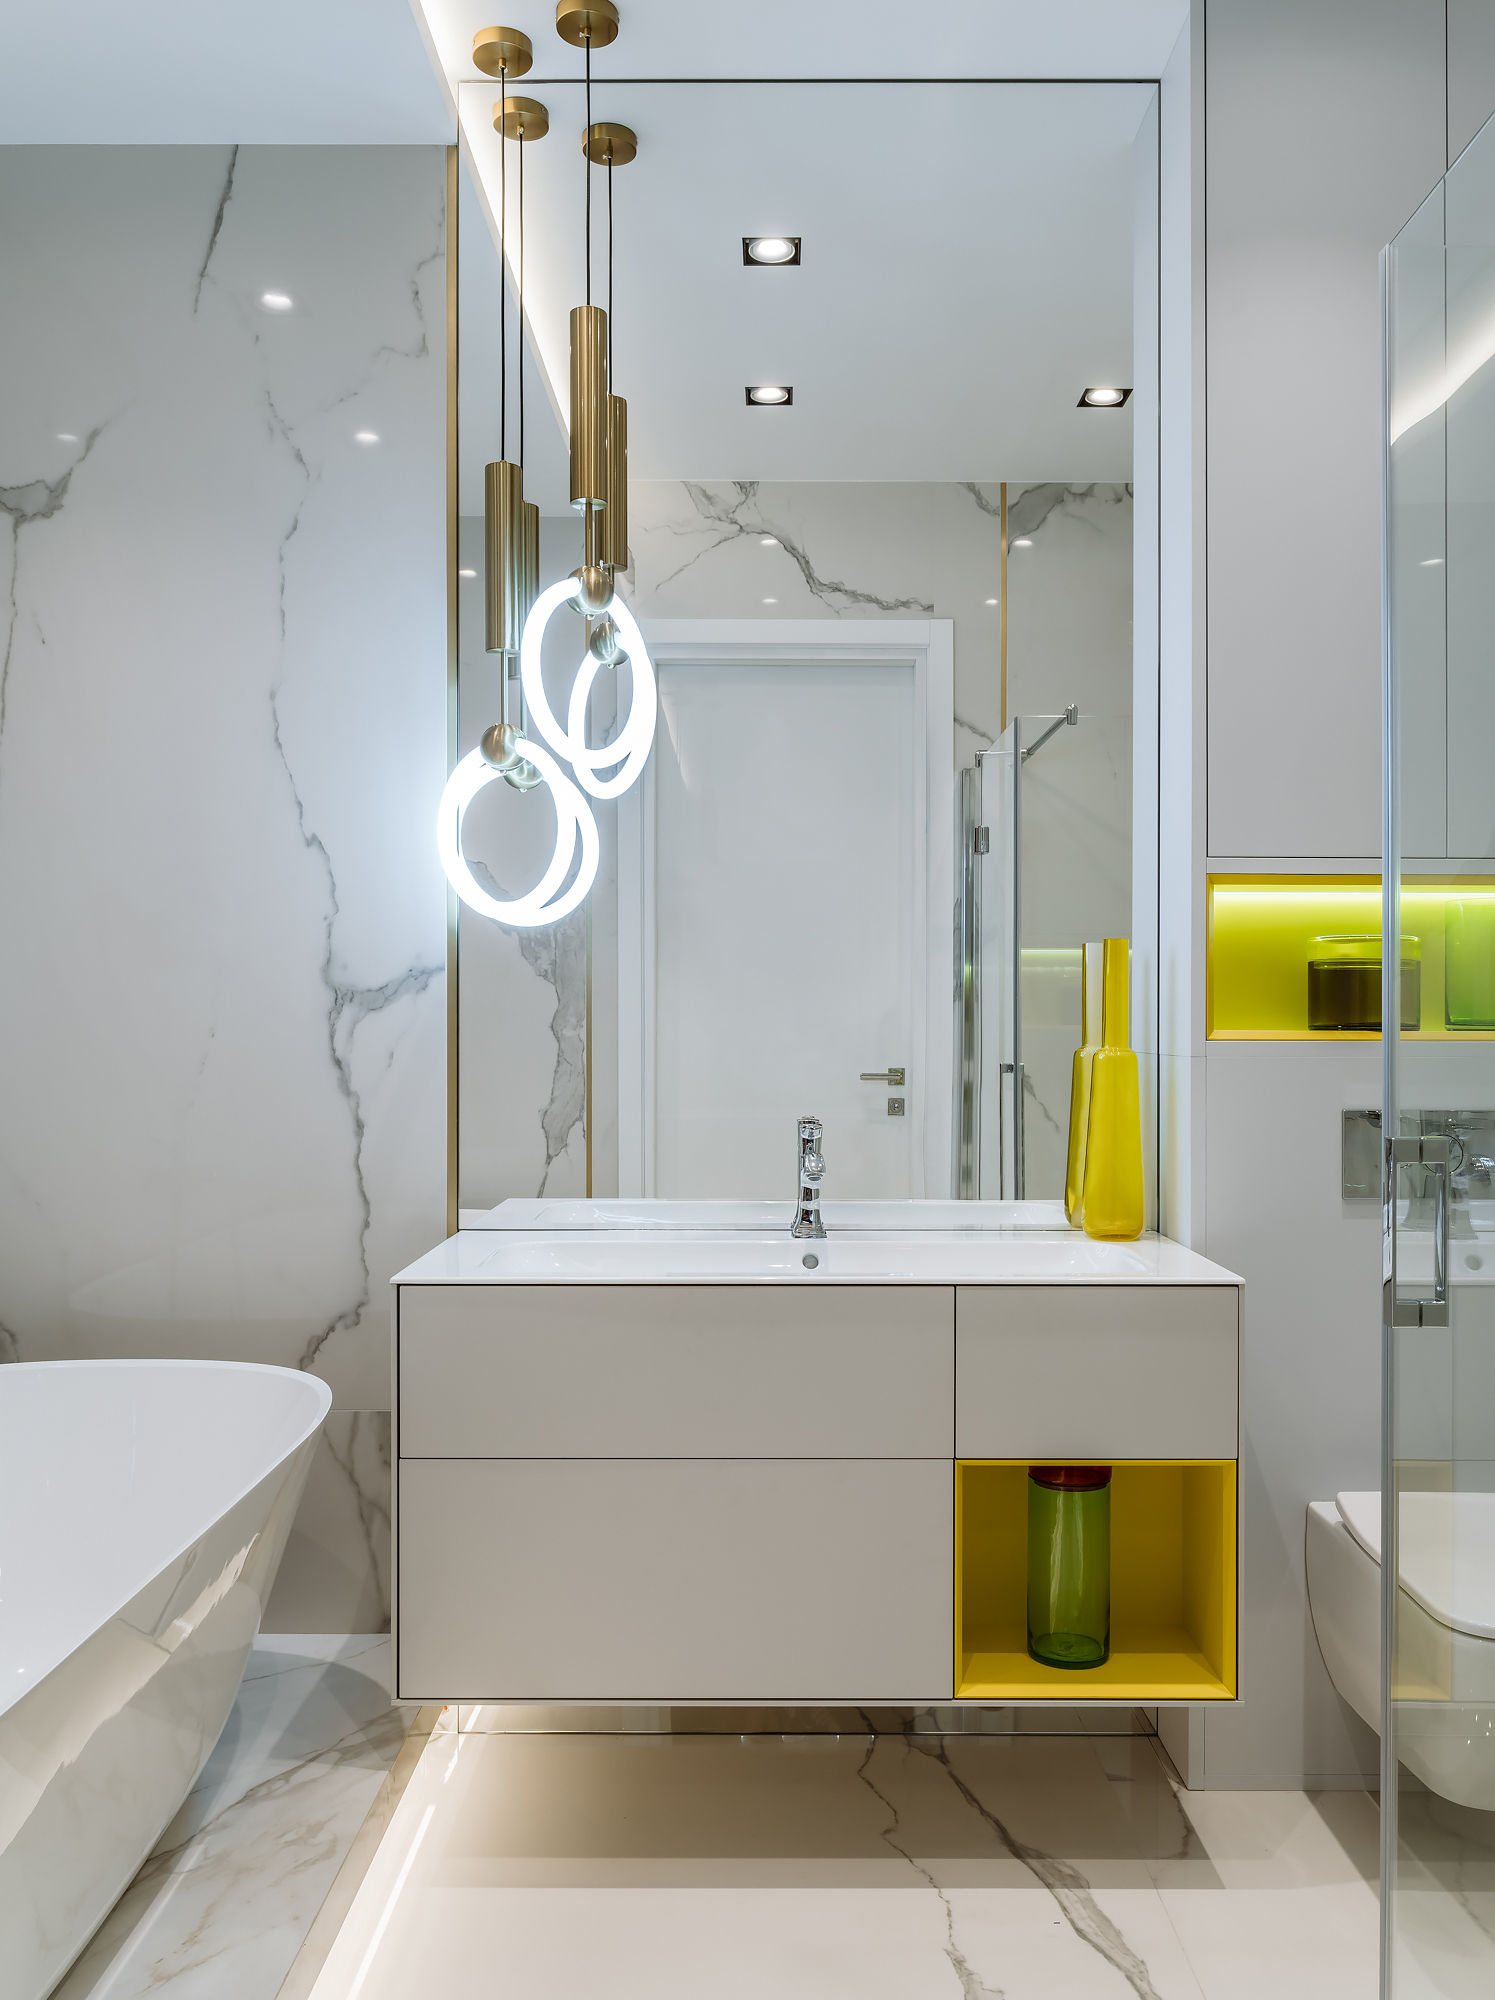 Không gian phòng tắm với gương ốp 'full' tường giúp 'nhân đôi' diện tích hiệu quả. Hệ thống đèn thả trần lấp lánh, đá cẩm thạch sang trọng và chút nhấn nhá của sắc vàng tươi tại hộc tủ lưu trữ, hốc tường trên toilet và chiếc bình trang trí bắt mắt.